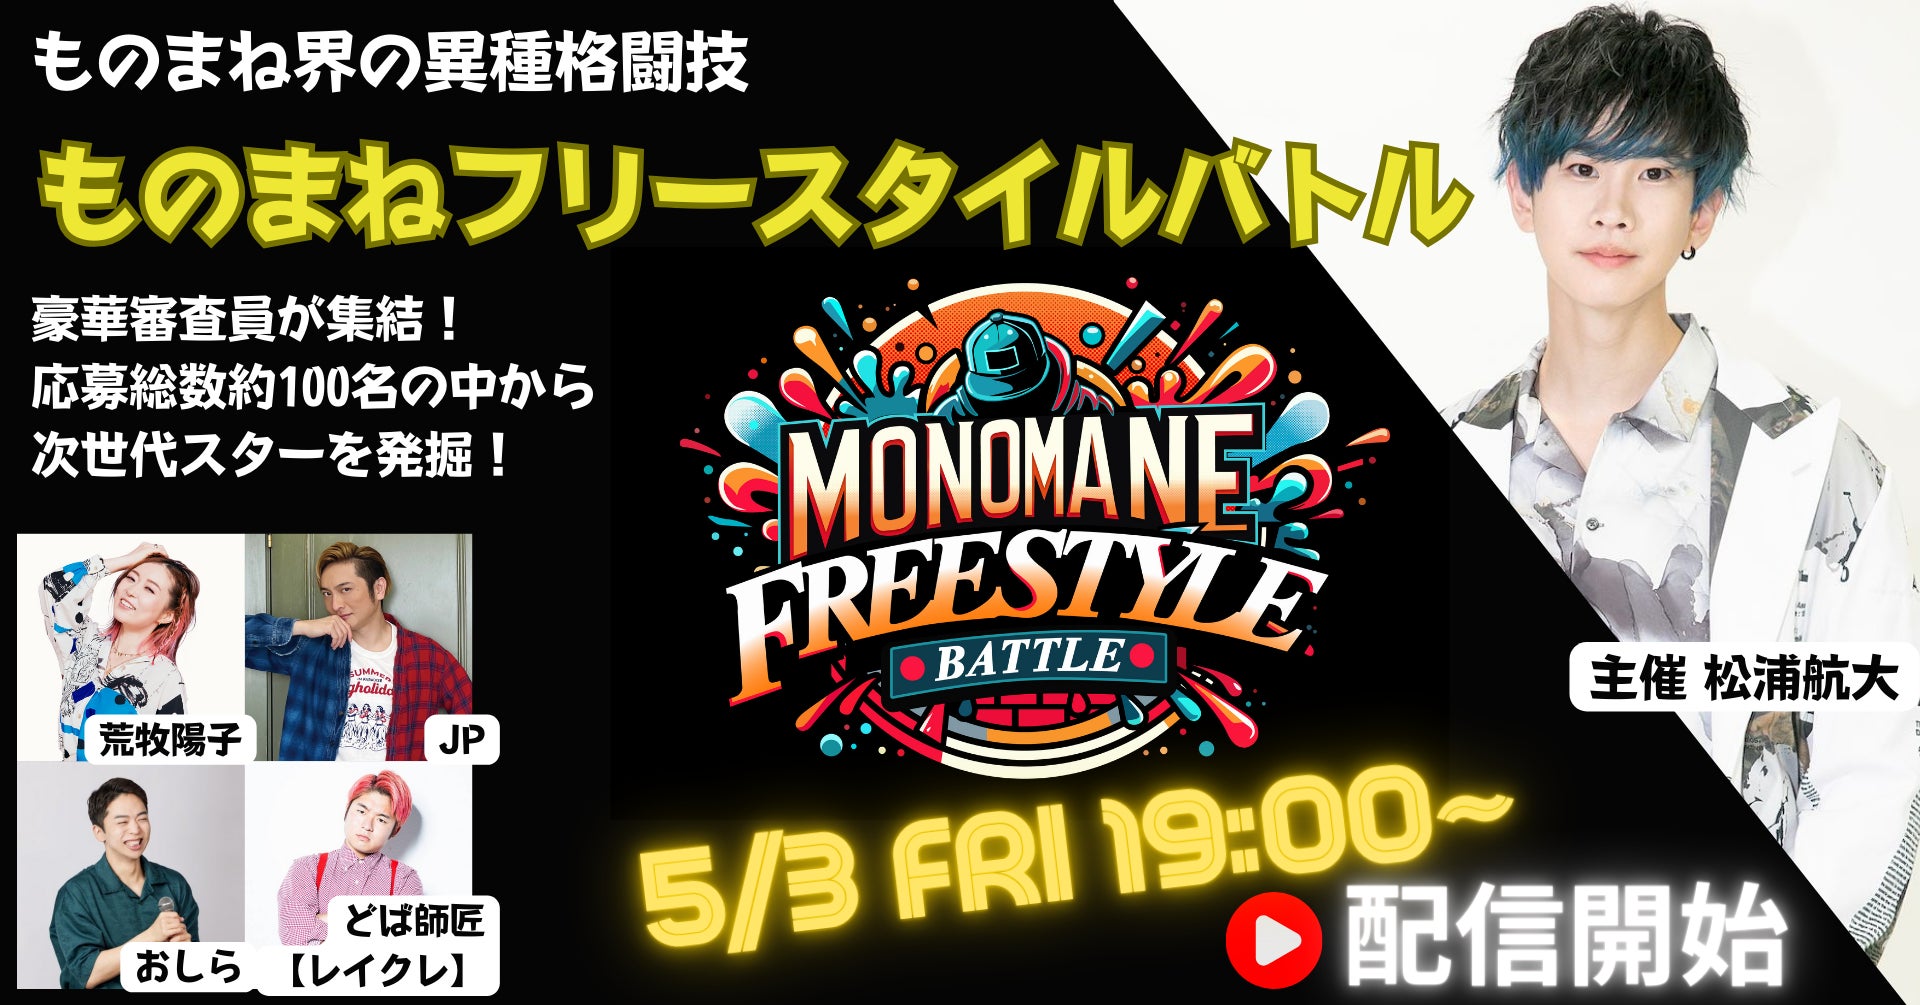 松浦航大 主催プロアマ混合「ものまねフリースタイルバトル」第一弾5/3YouTubeにて配信開始！